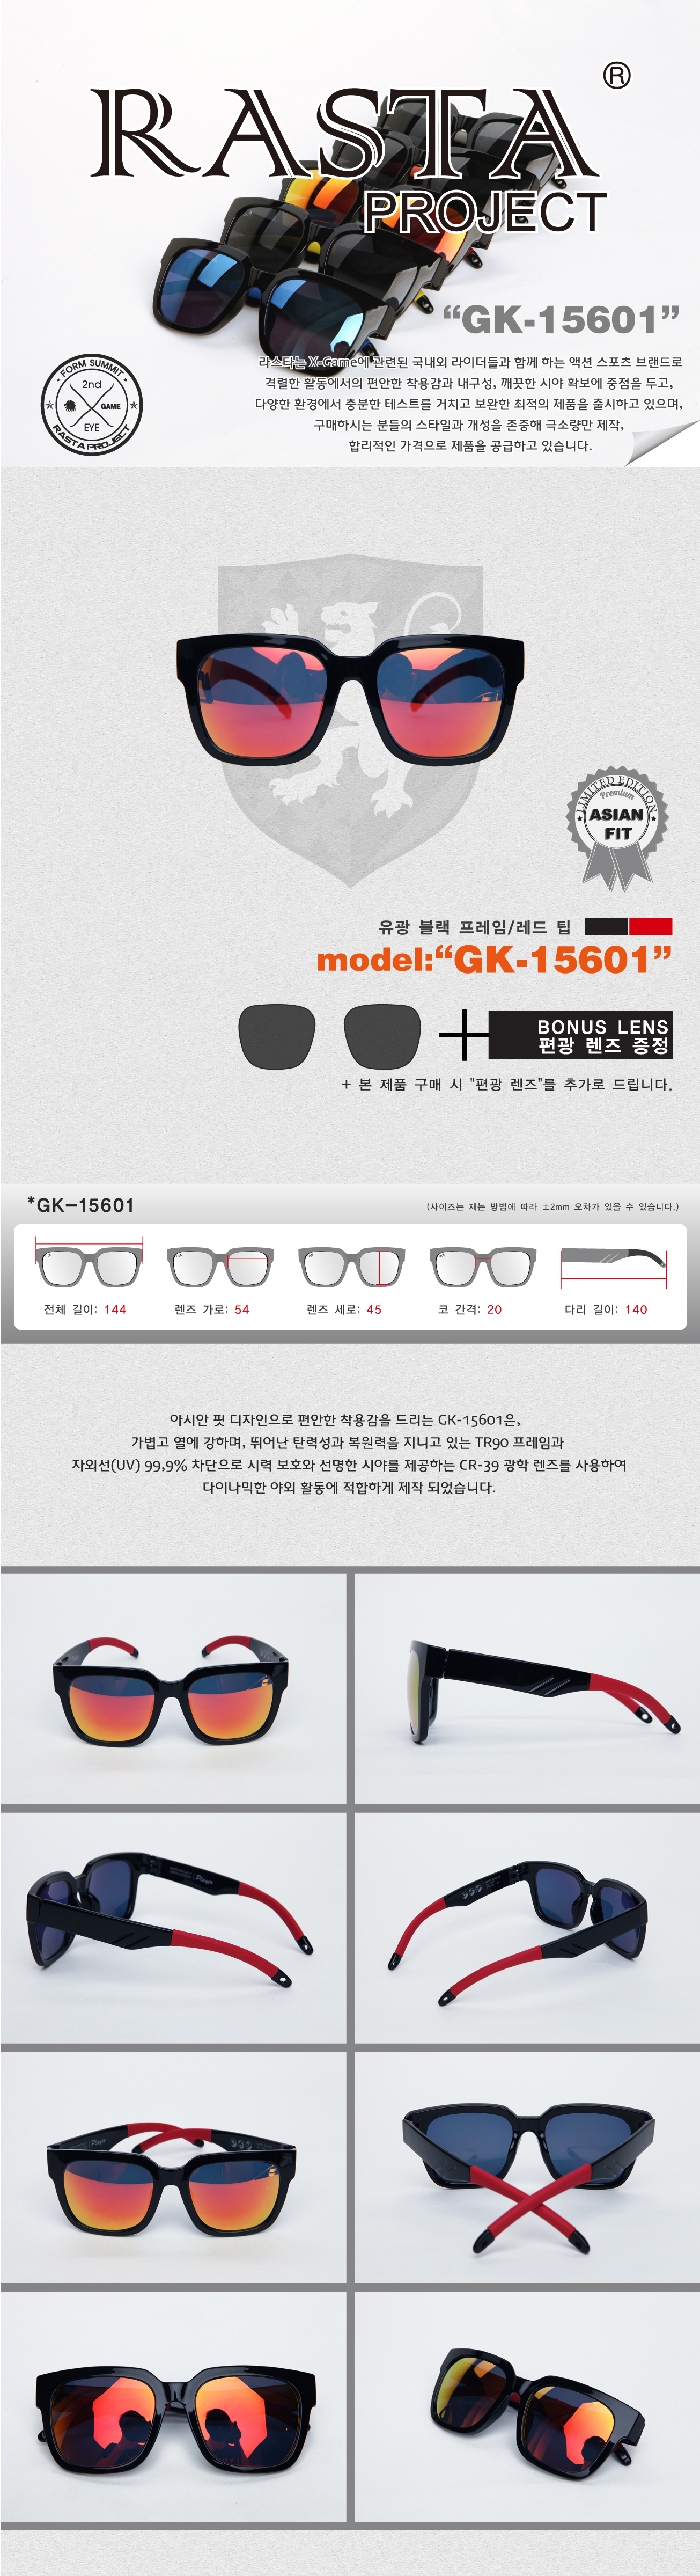 GK-15601 Gloss Black/Red